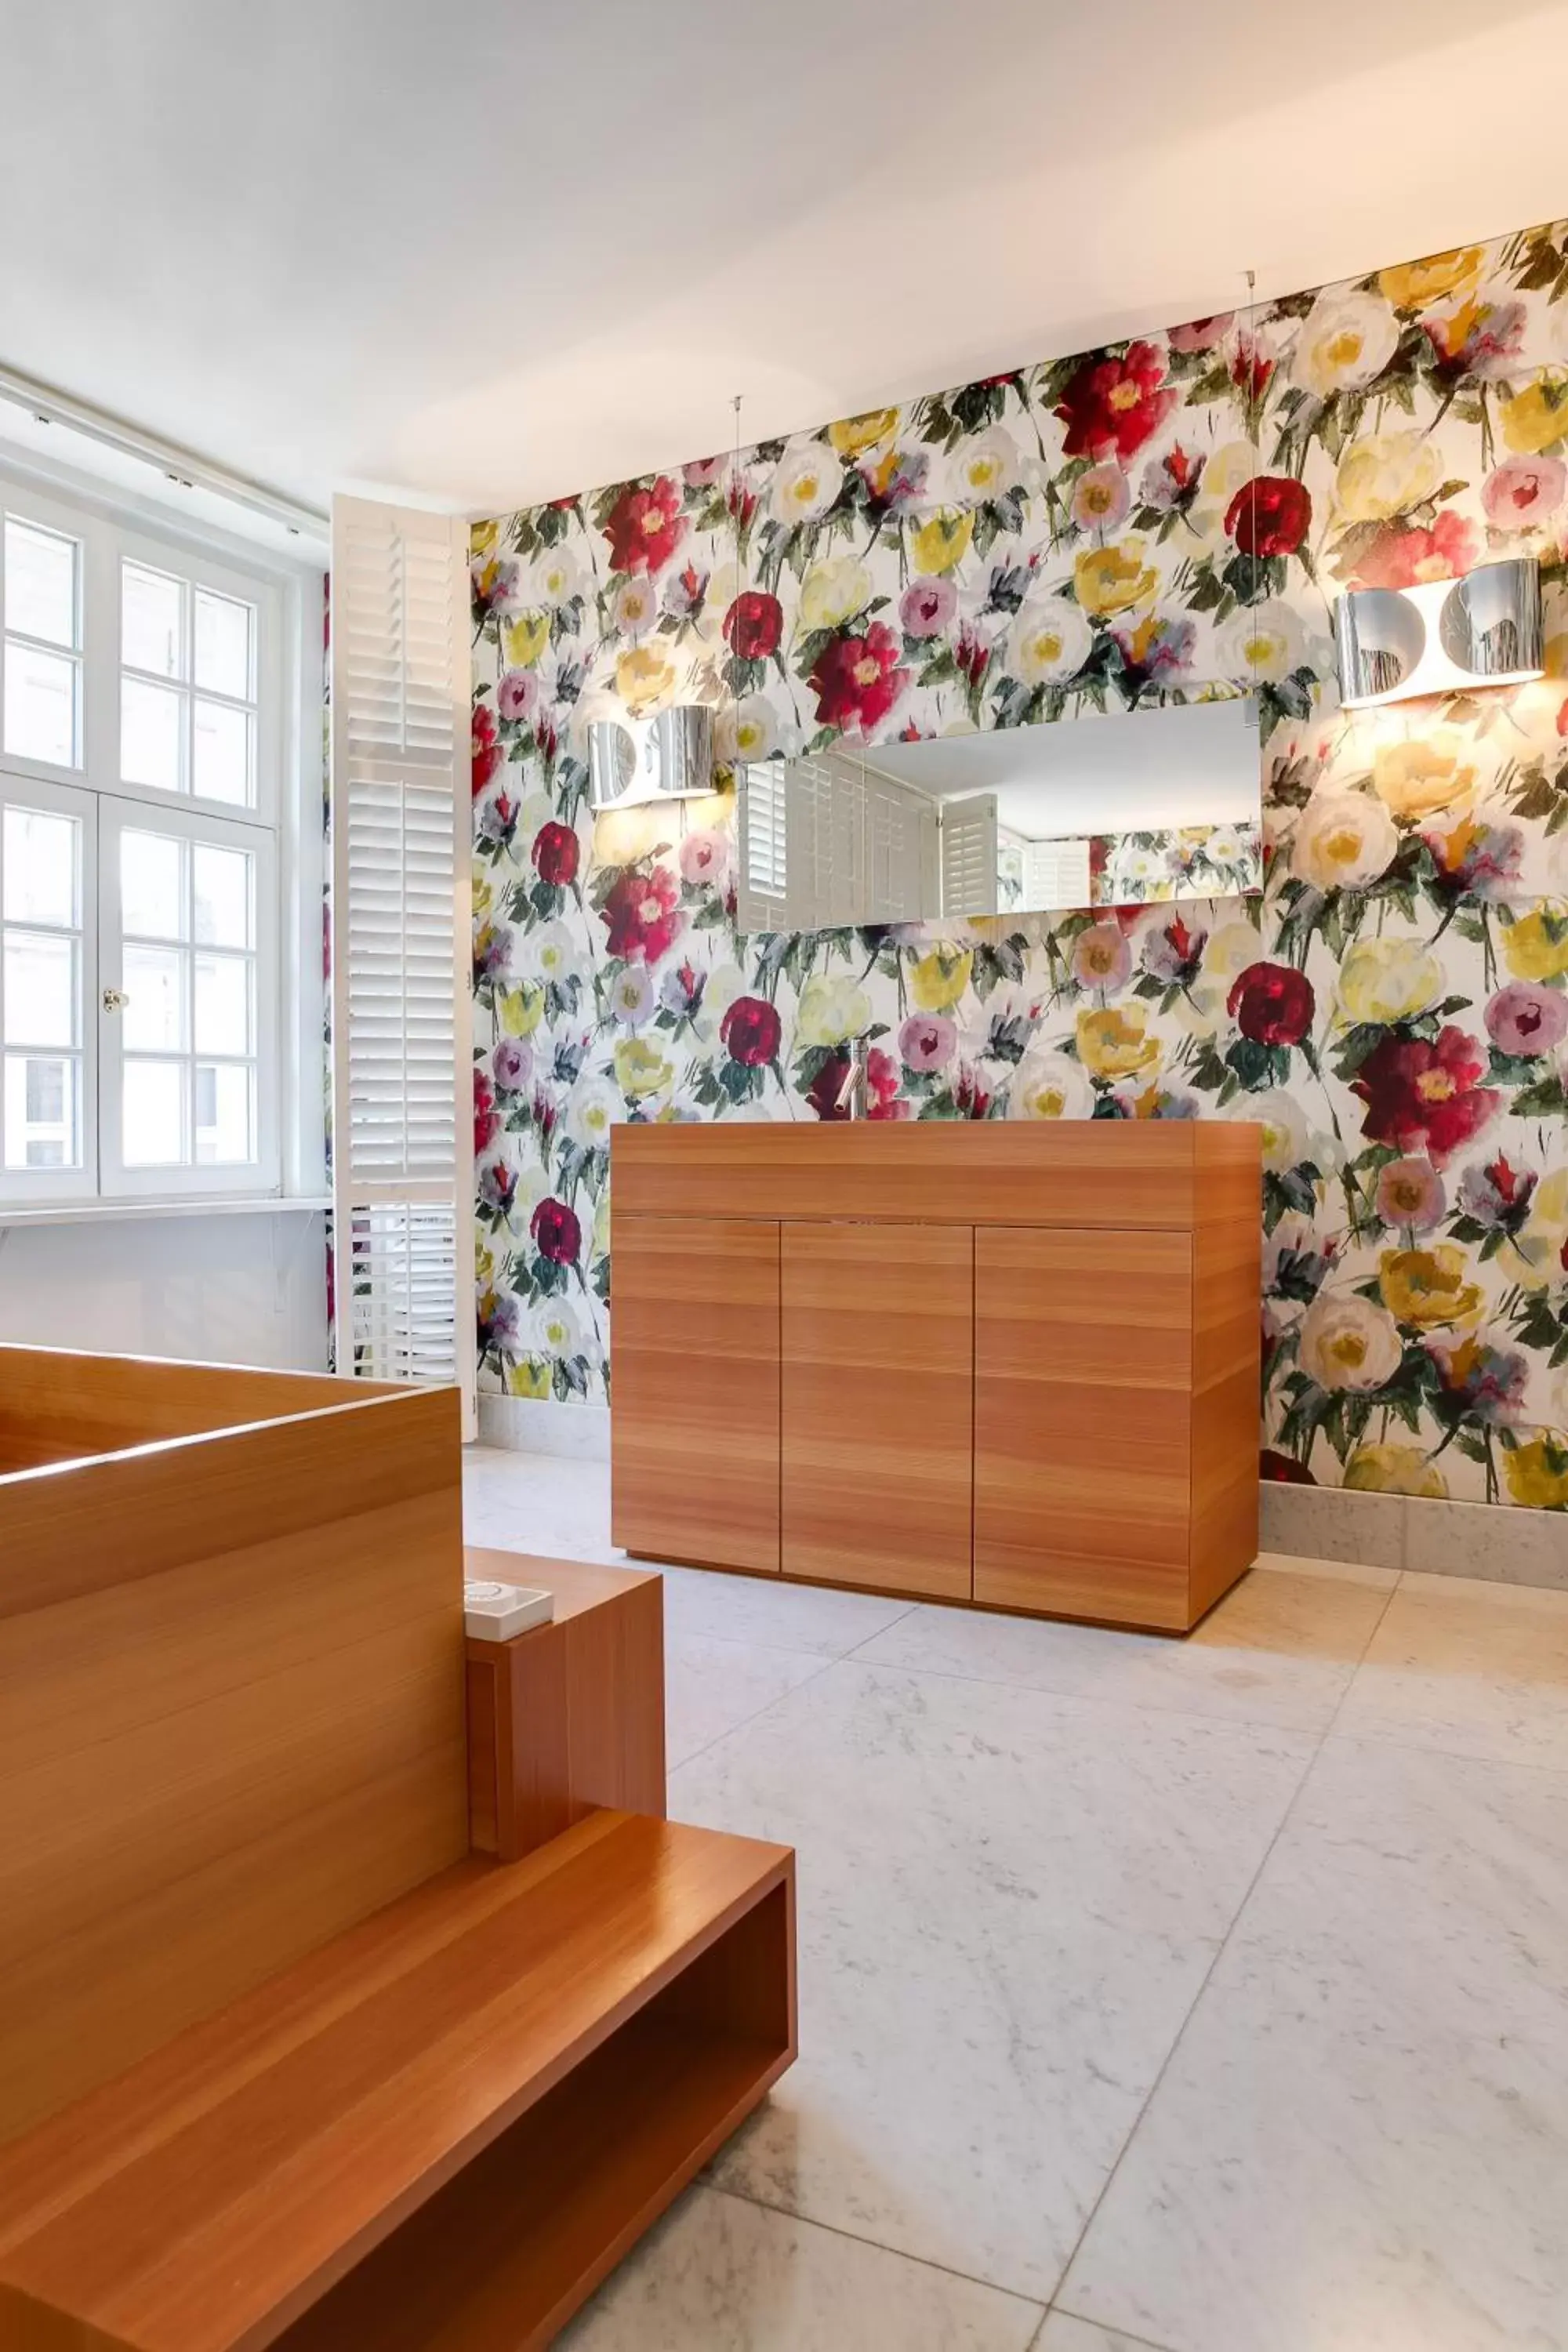 Bathroom in Small Luxury Hotel De Witte Lelie